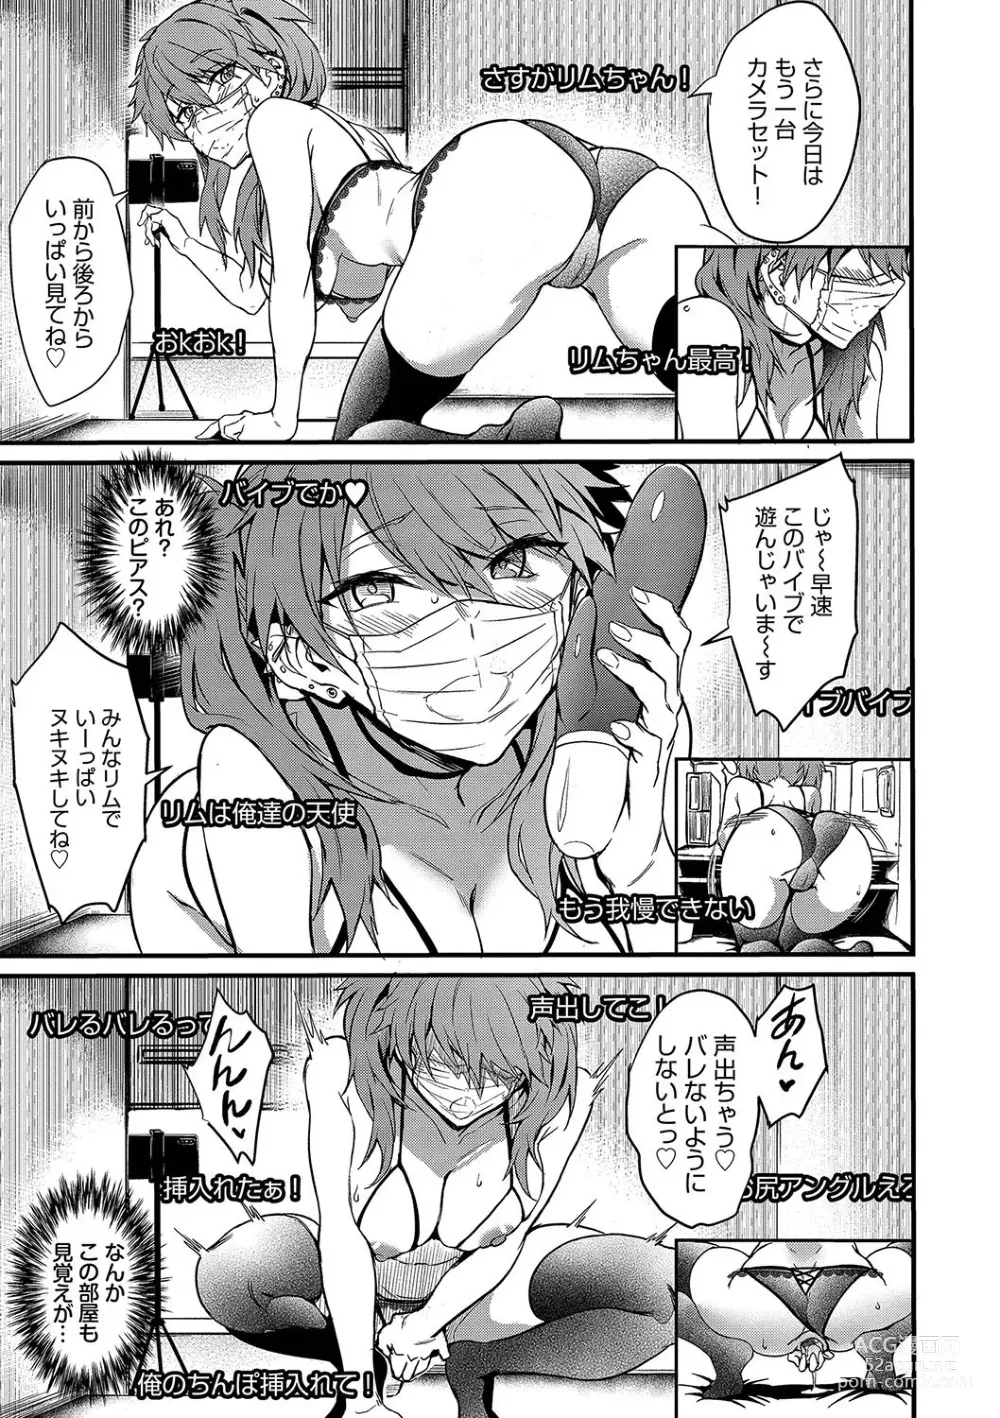 Page 8 of manga Bitch Bitch